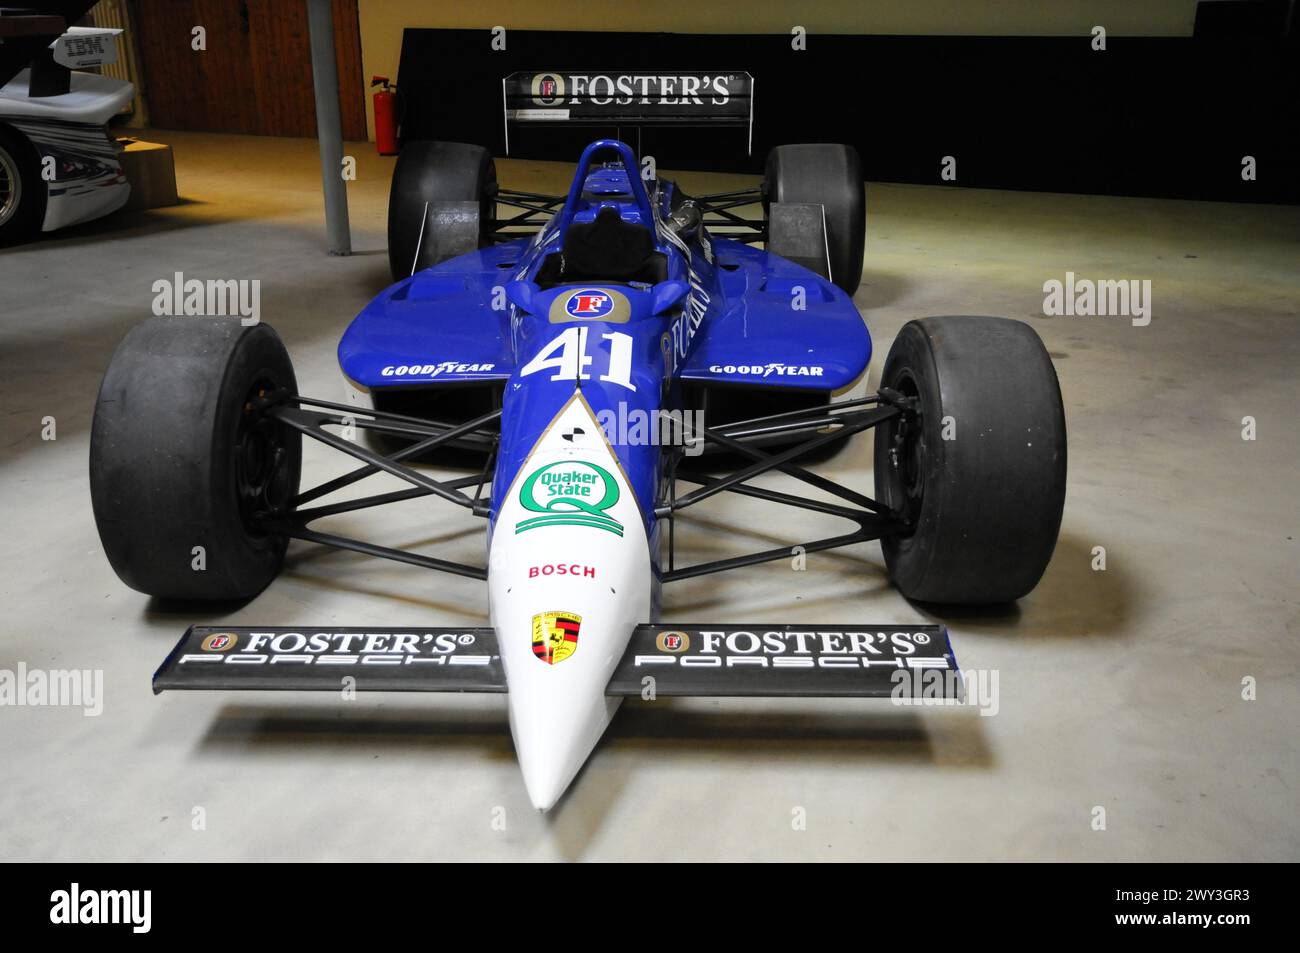 Deutsches Automuseum Langenburg, Ein blauer Formel-1-Rennwagen mit Goodyear- und Bosch-Sponsoring in einer Ausstellung, Deutsches Automuseum Langenburg Stockfoto